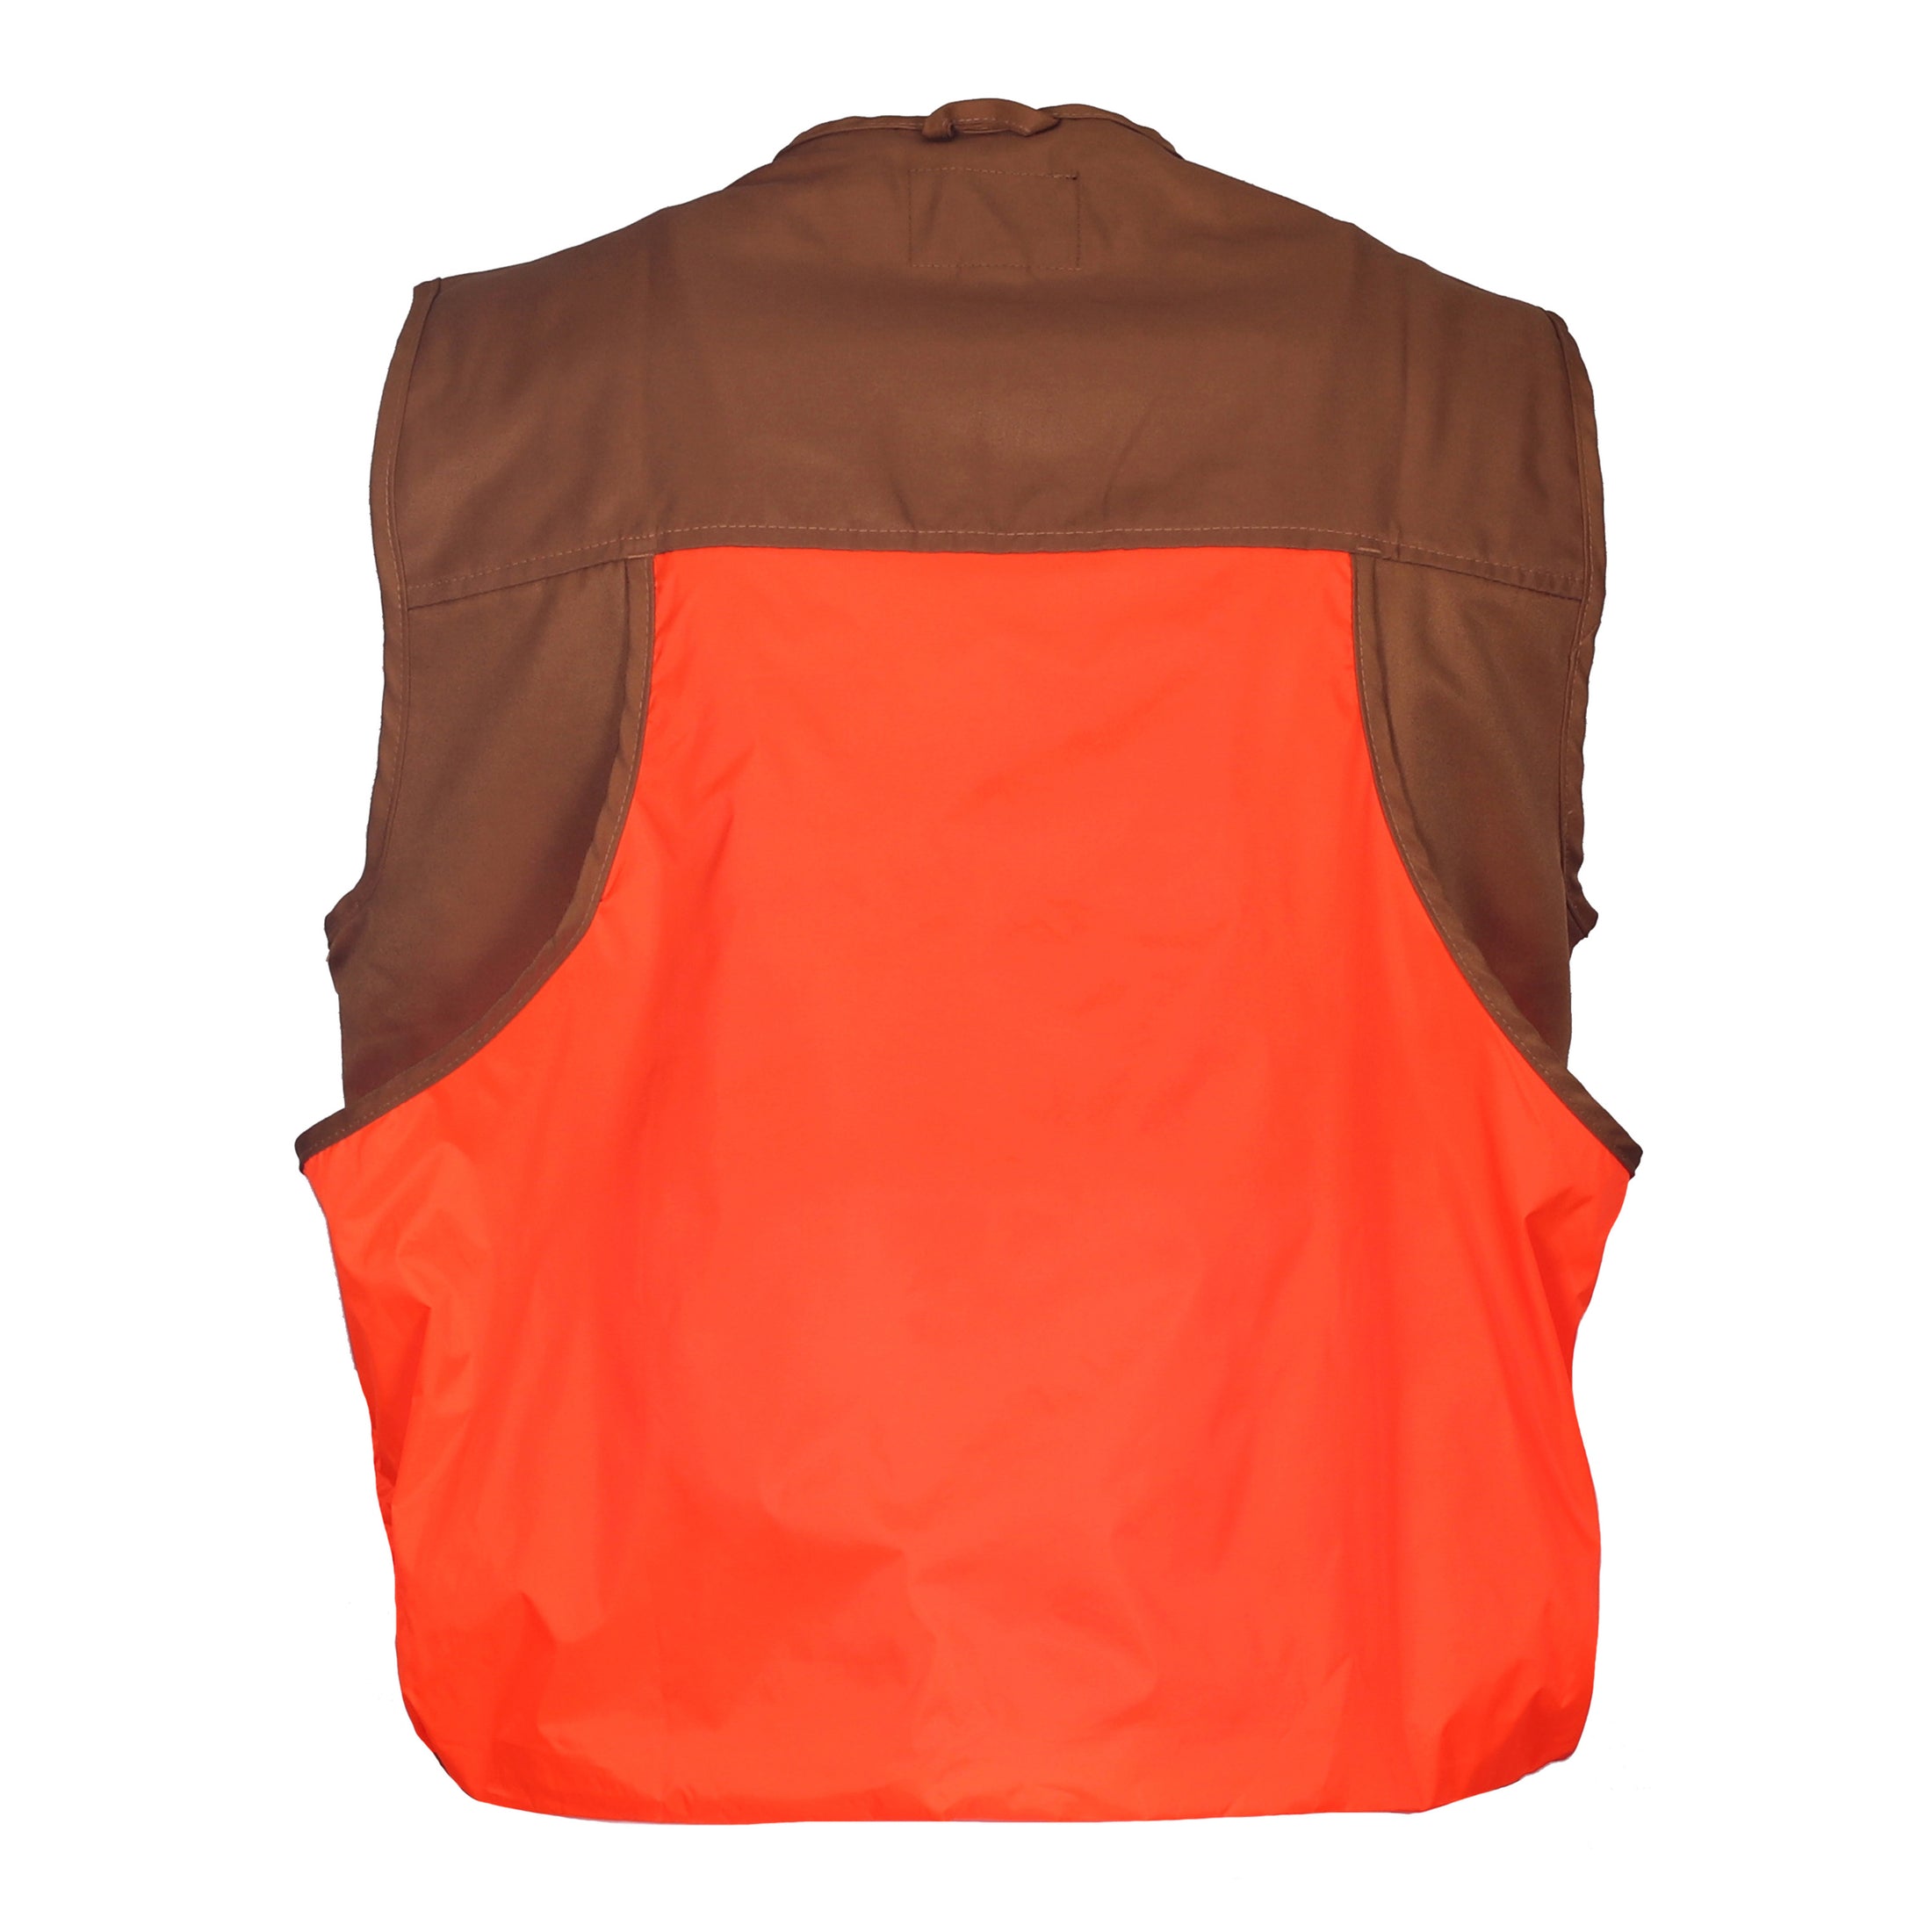 gamehide youth front loader vest back view (marsh brown/orange)